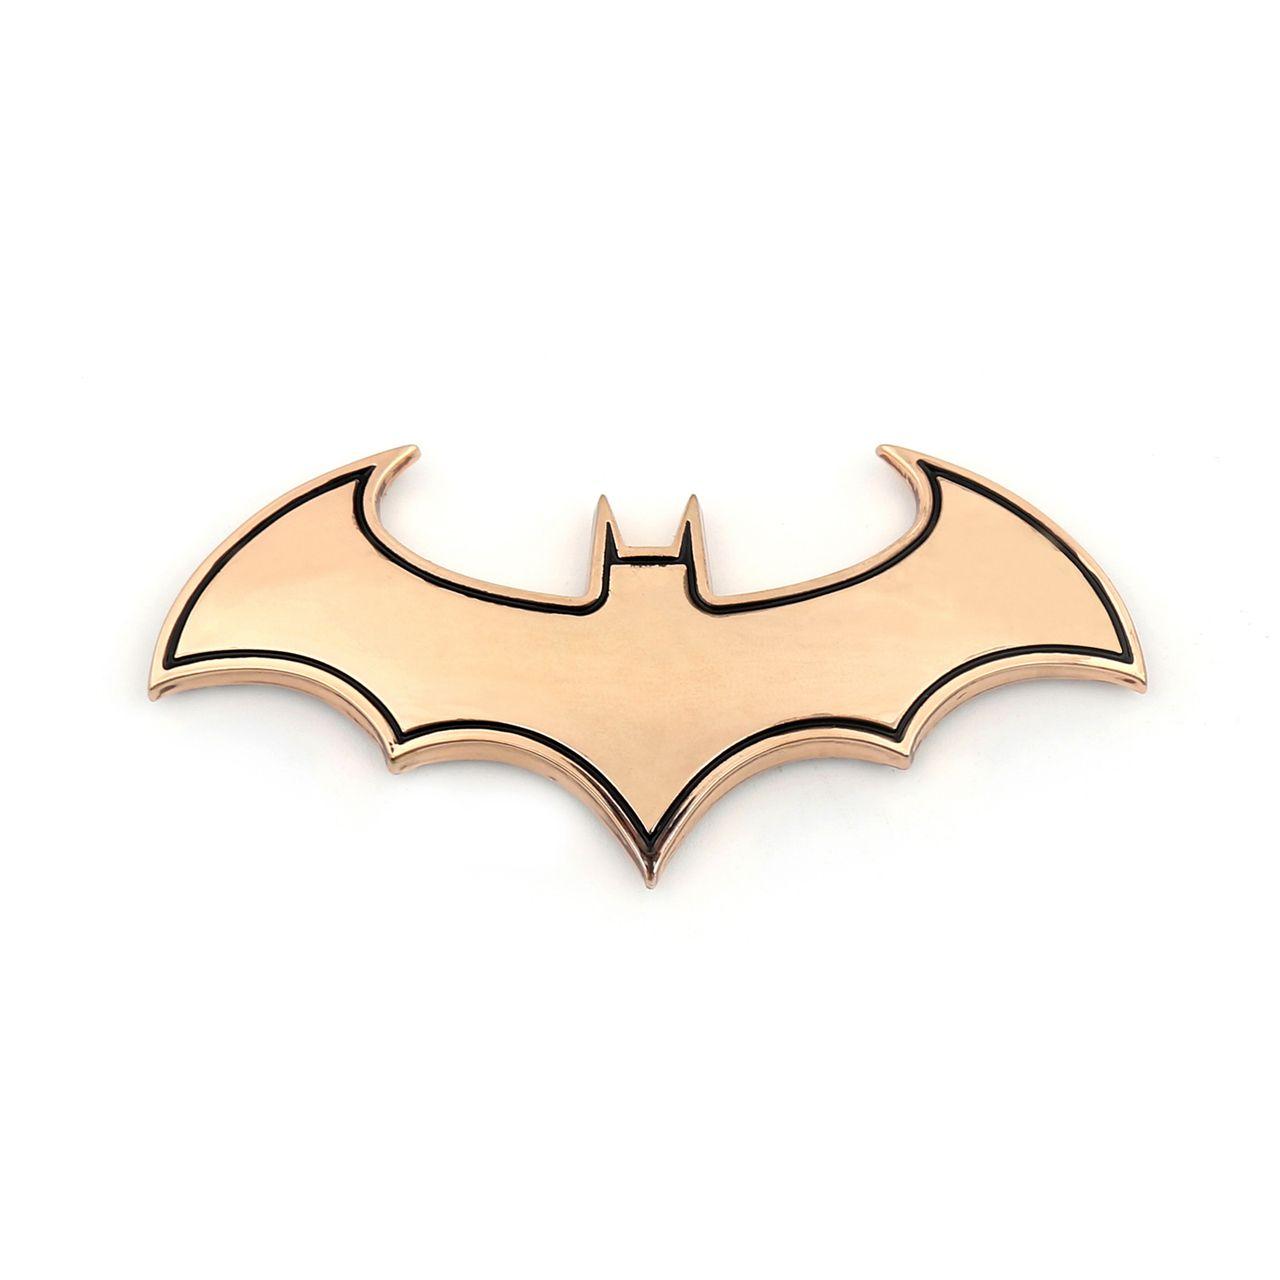 Gold Bat Logo - Batman Emblem Bat Badge SuperCool Metal Sticker Decal Accessories